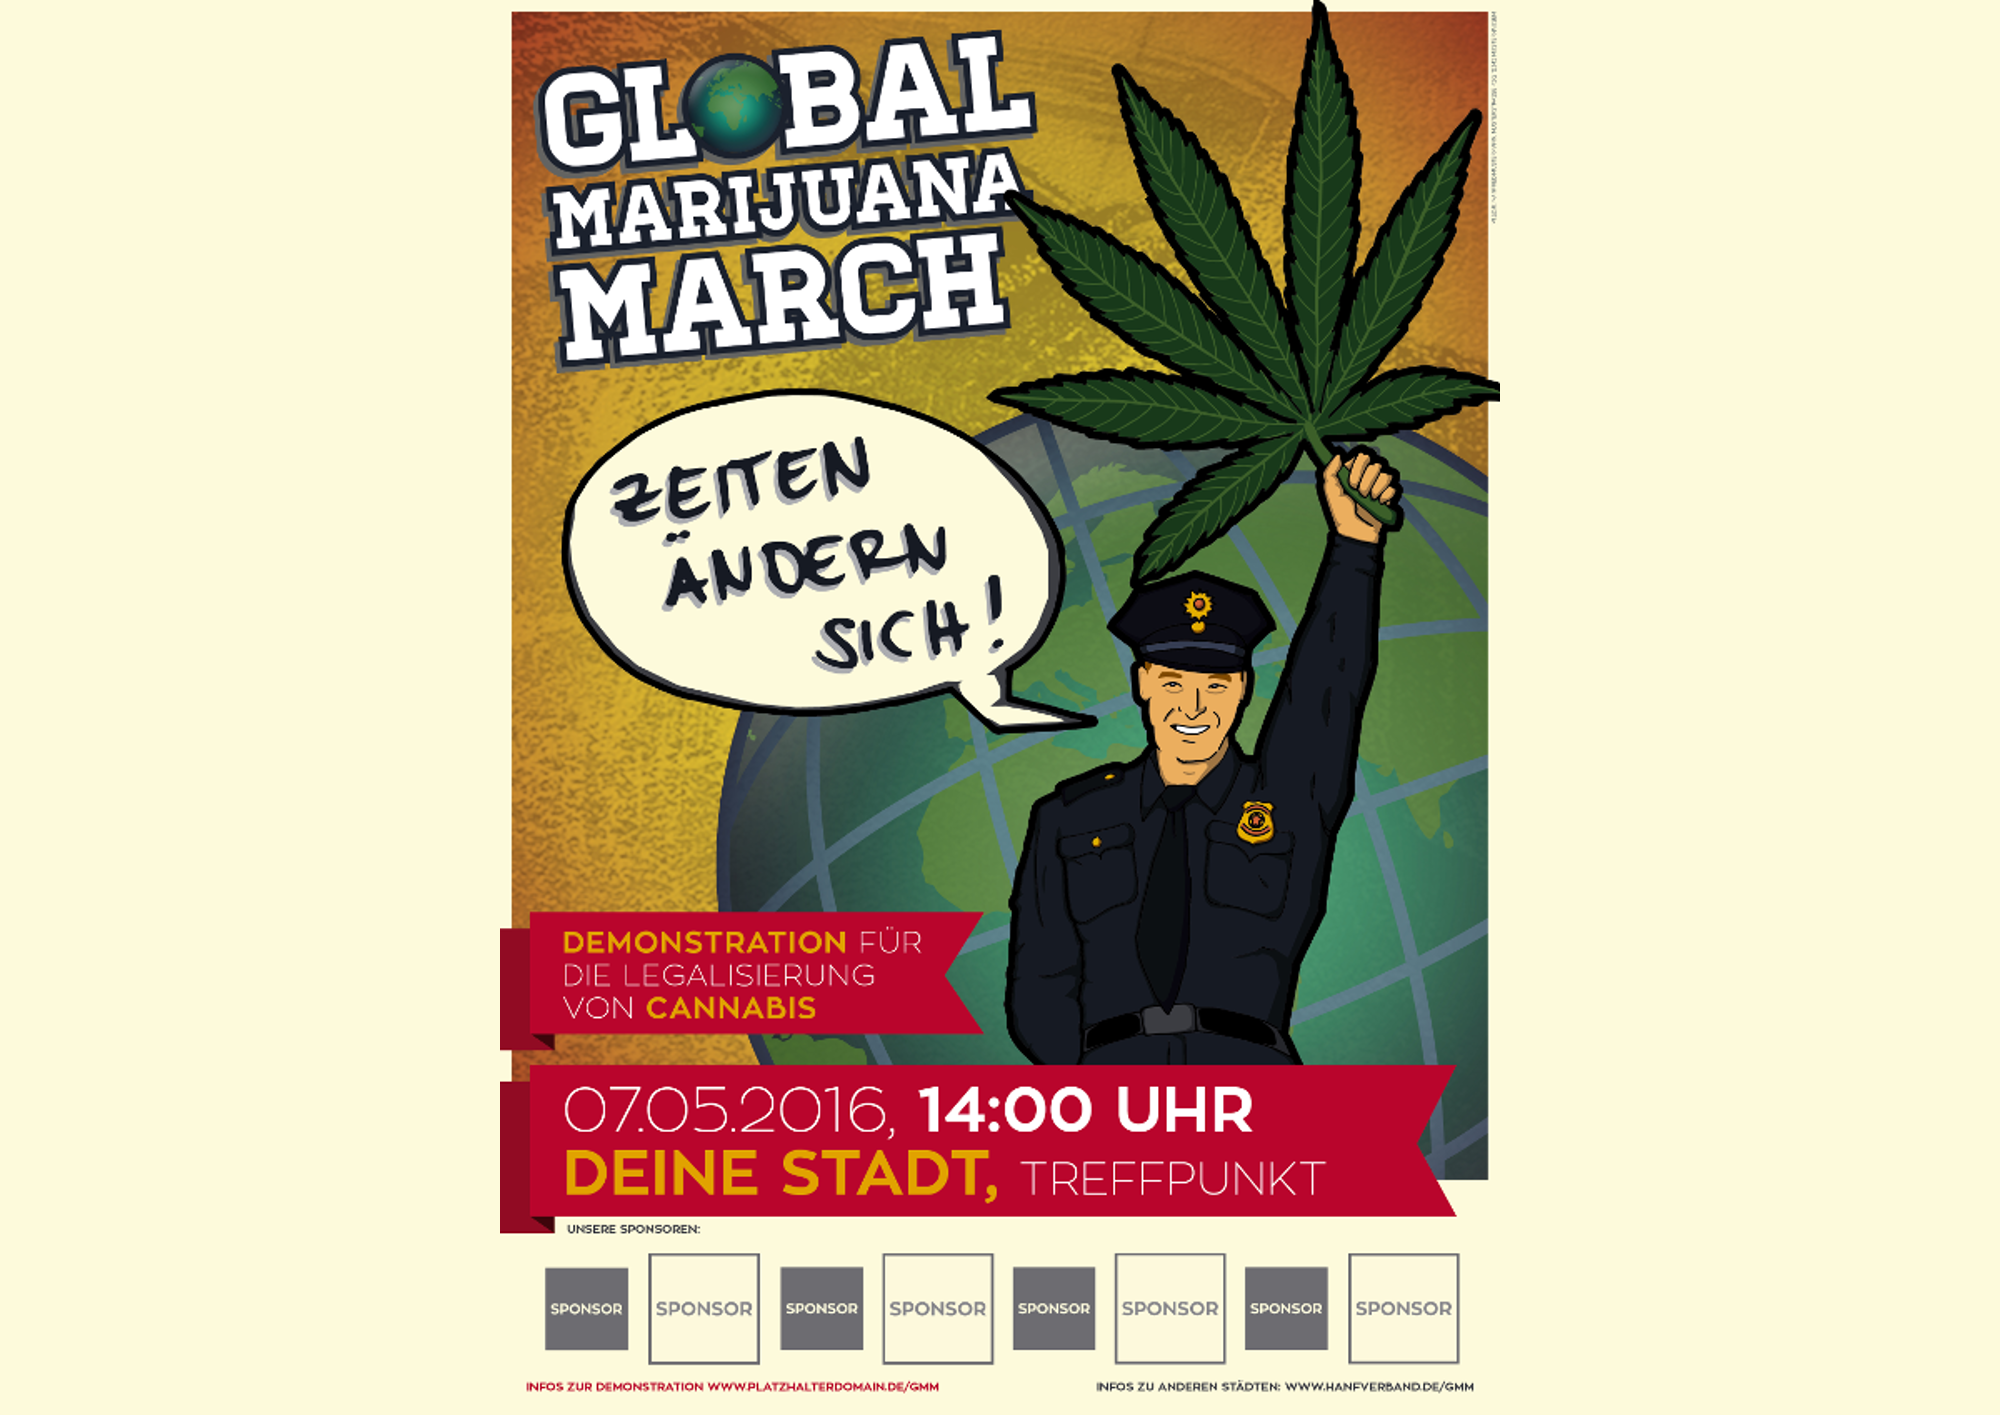 Global Marijuana March 2016 – Die Zeiten ändern sich!